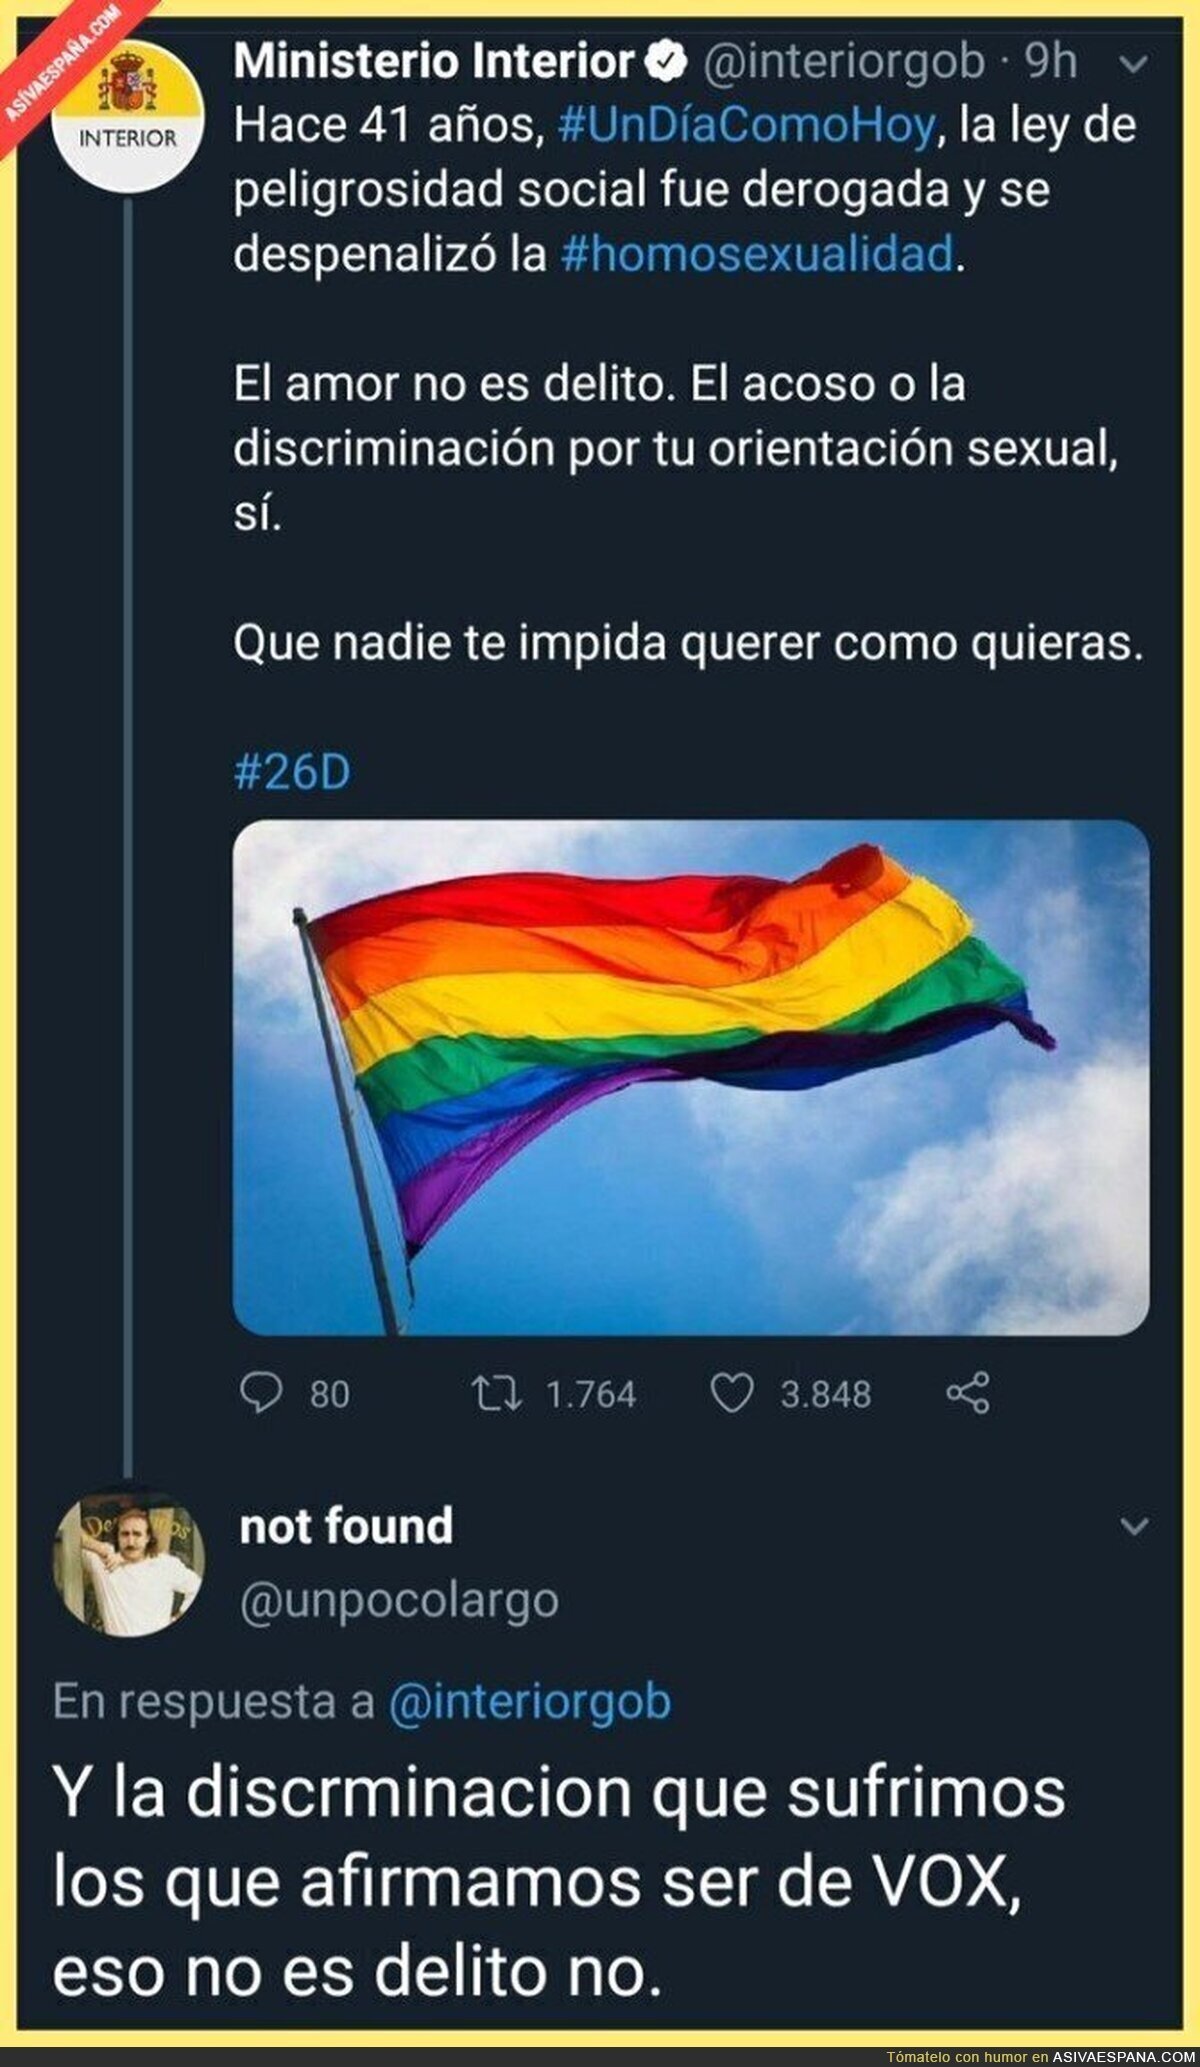 "La discriminación por ser de VOX"